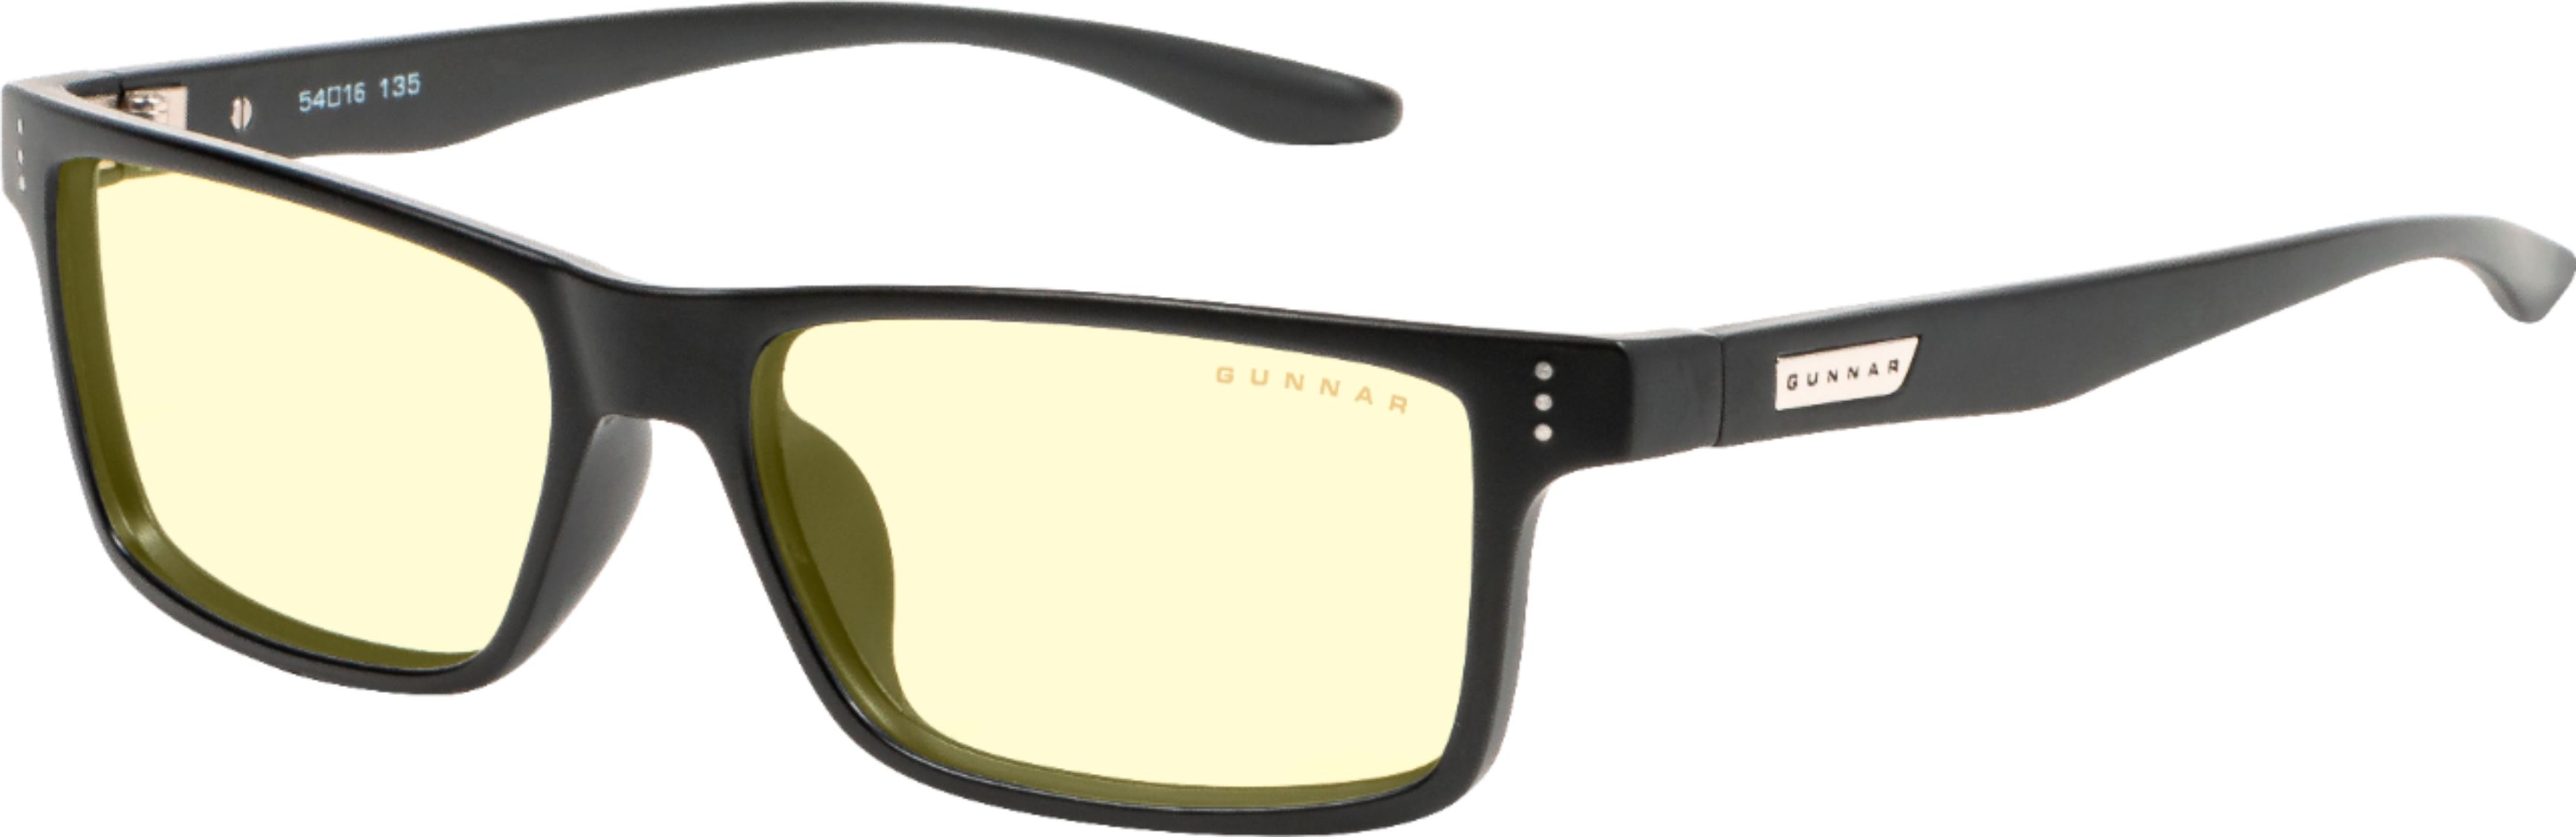 Gunnar - Vertex Gaming Eyewear - Onyx